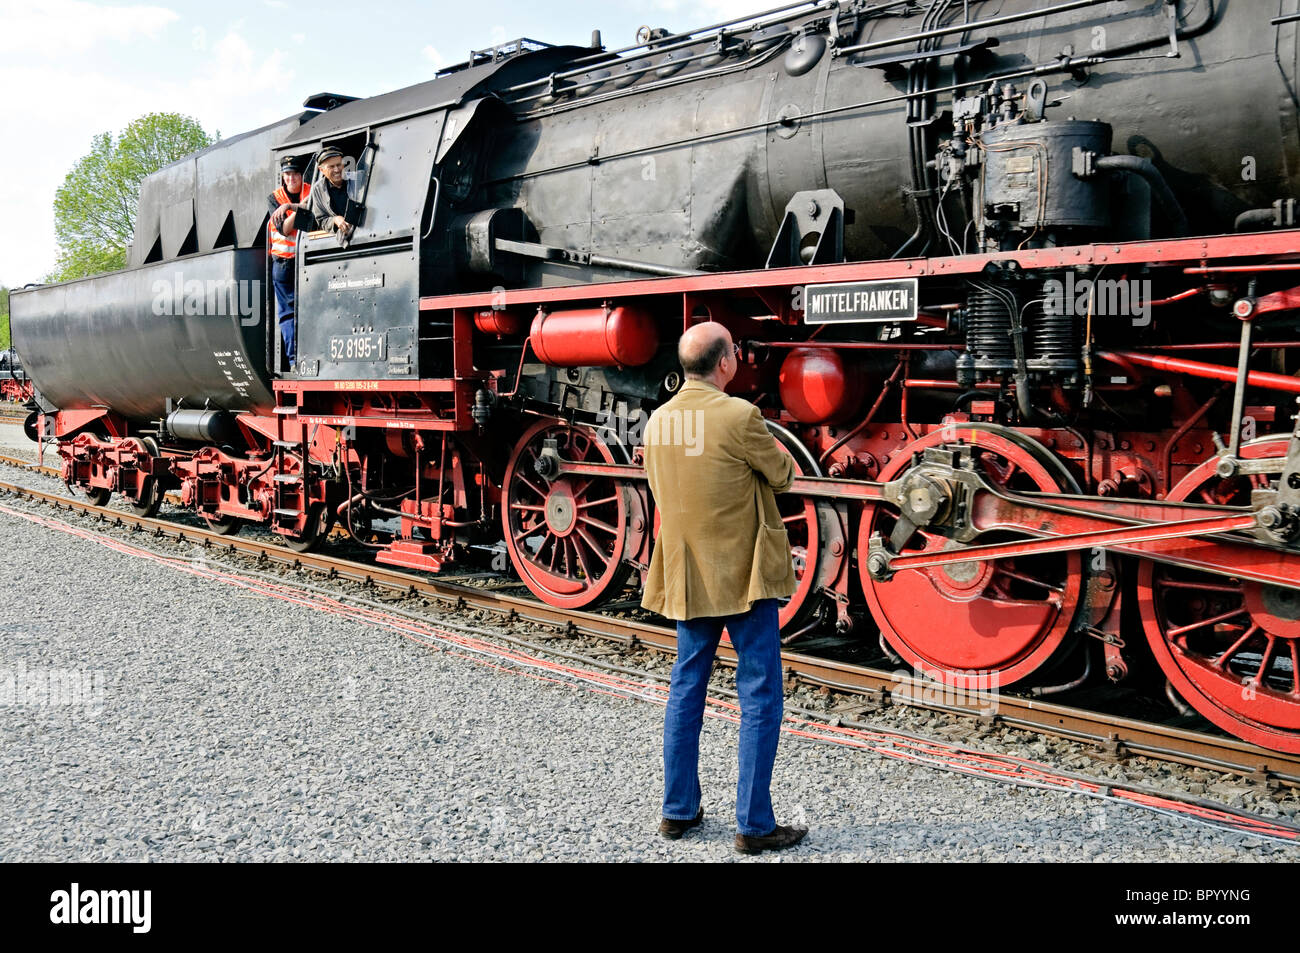 Man admiring steam locomotive 'Mittelfranken' at the German Steam Locomotive Museum, Neuenmarkt, Franconia, Bavaria, Germany. Stock Photo